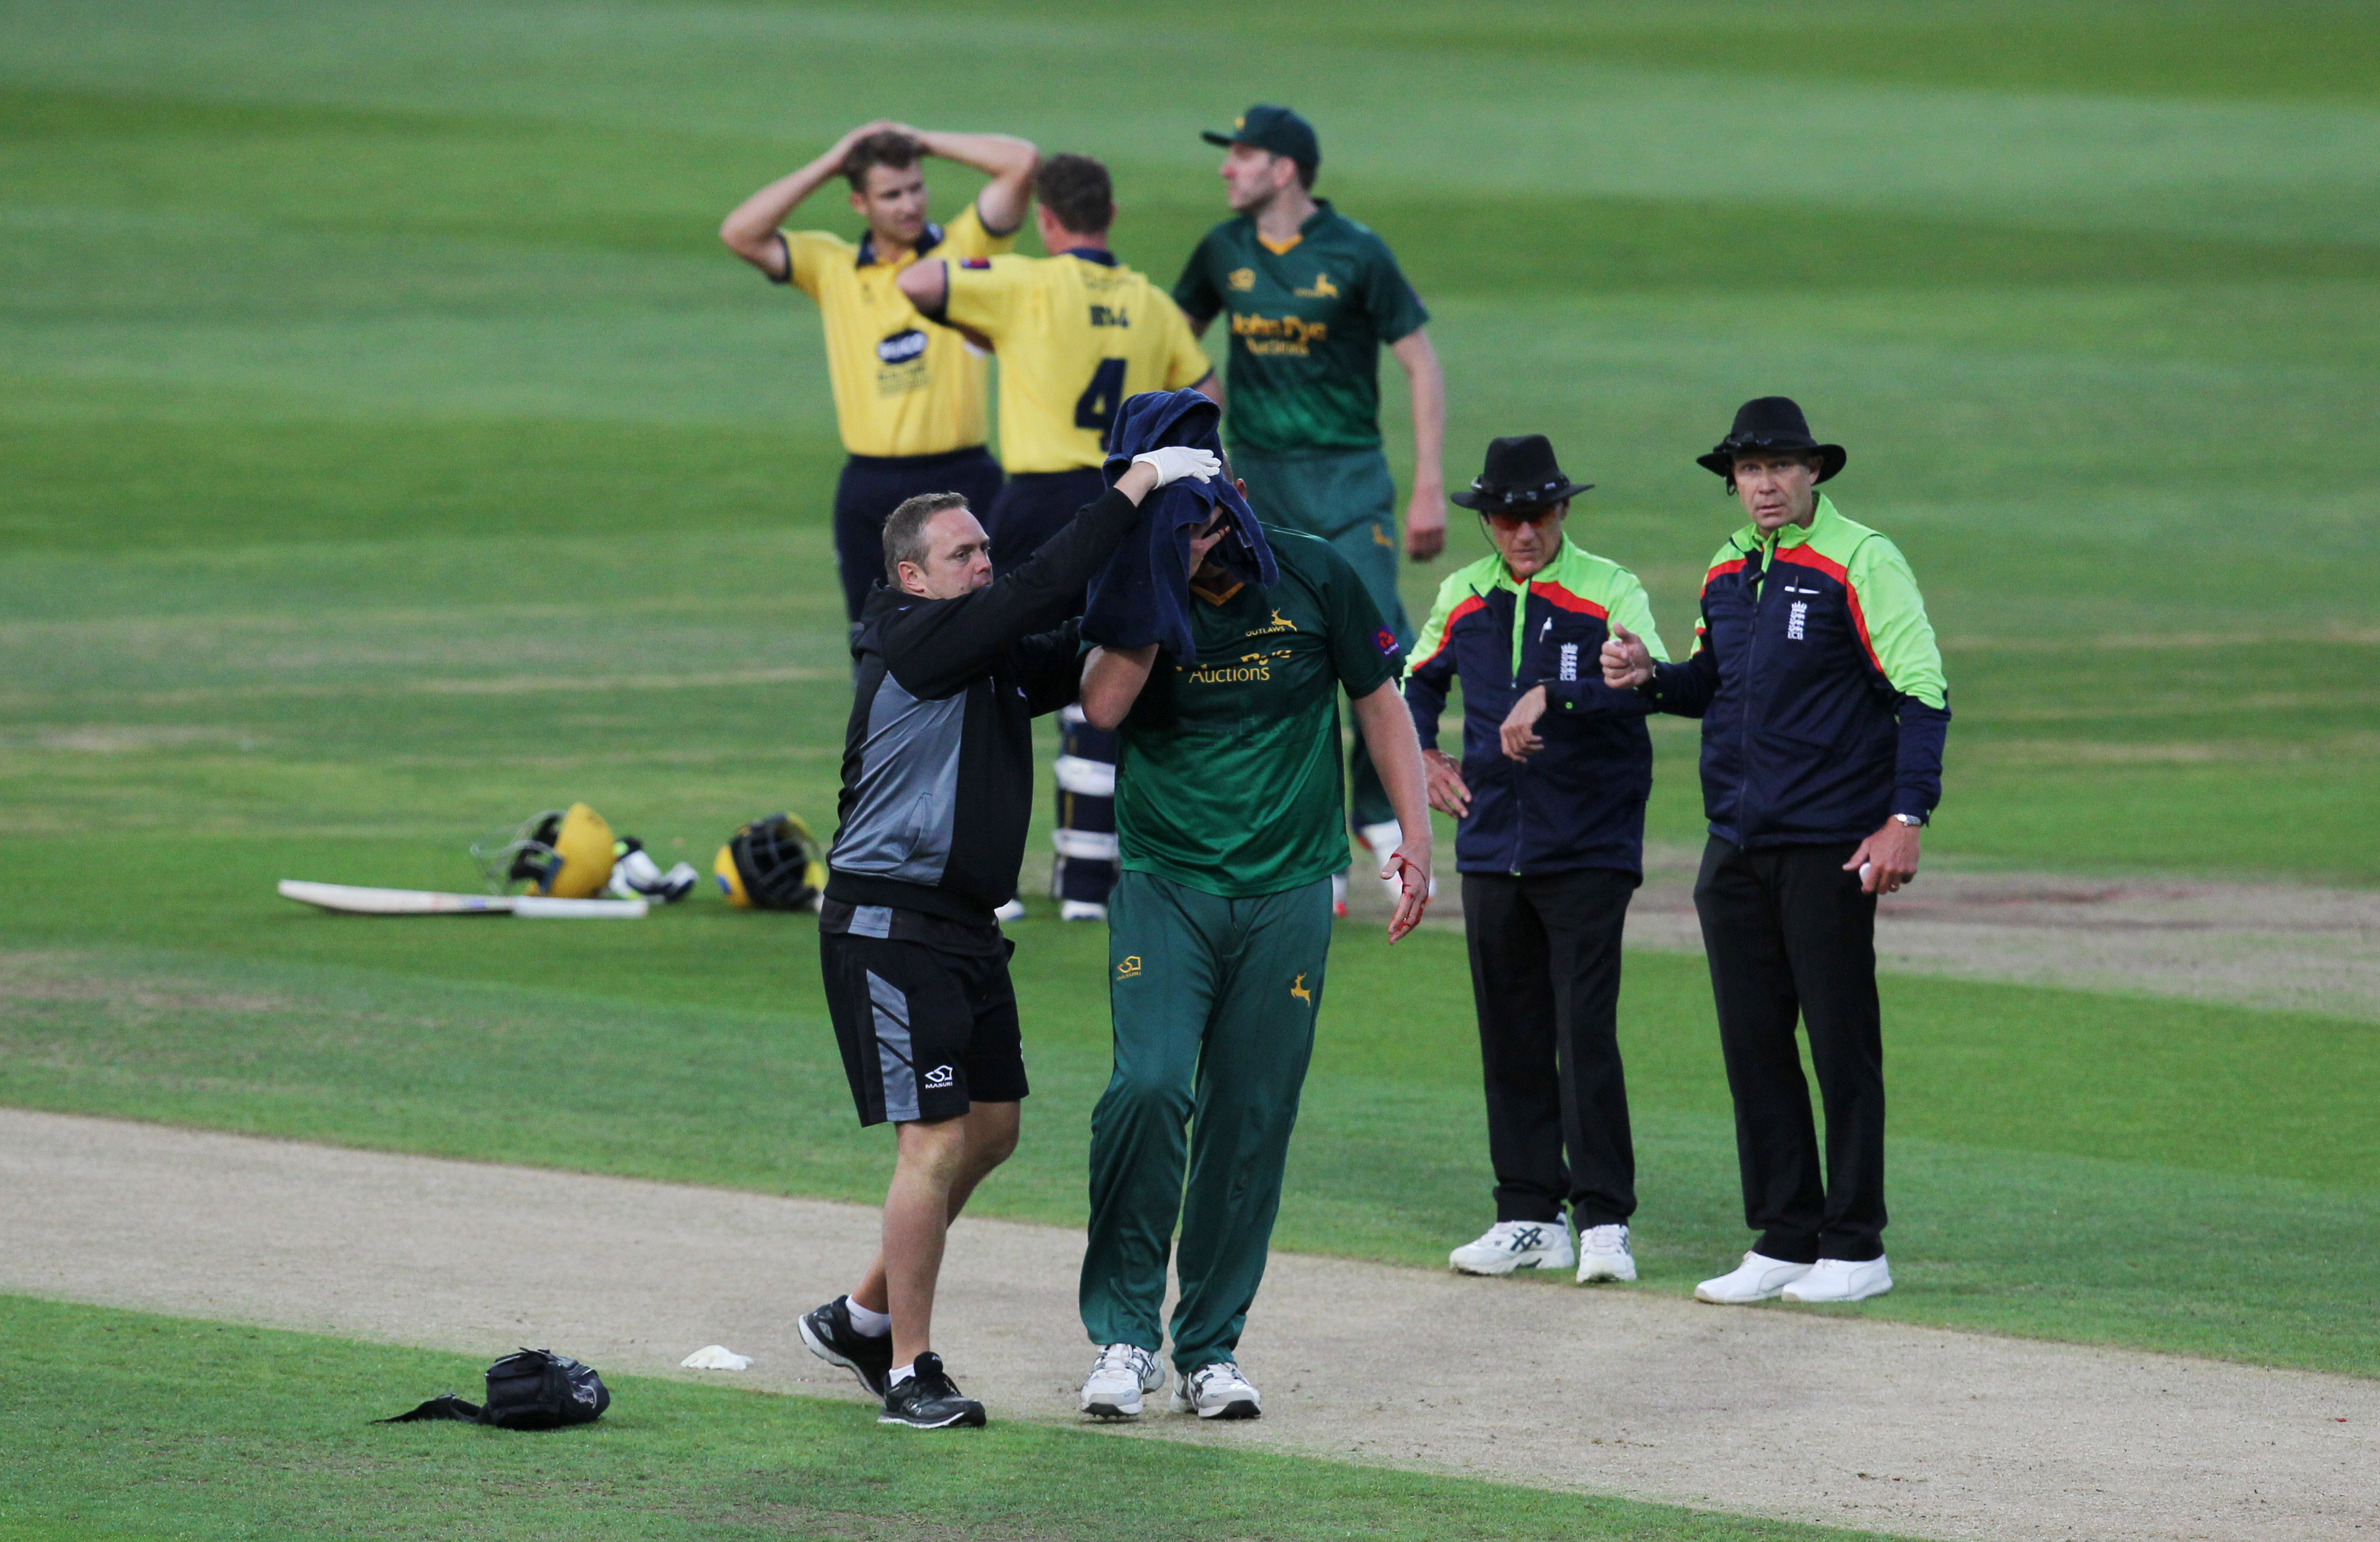 WATCH | Cricketer Luke Fletcher leaves ground after horror injury